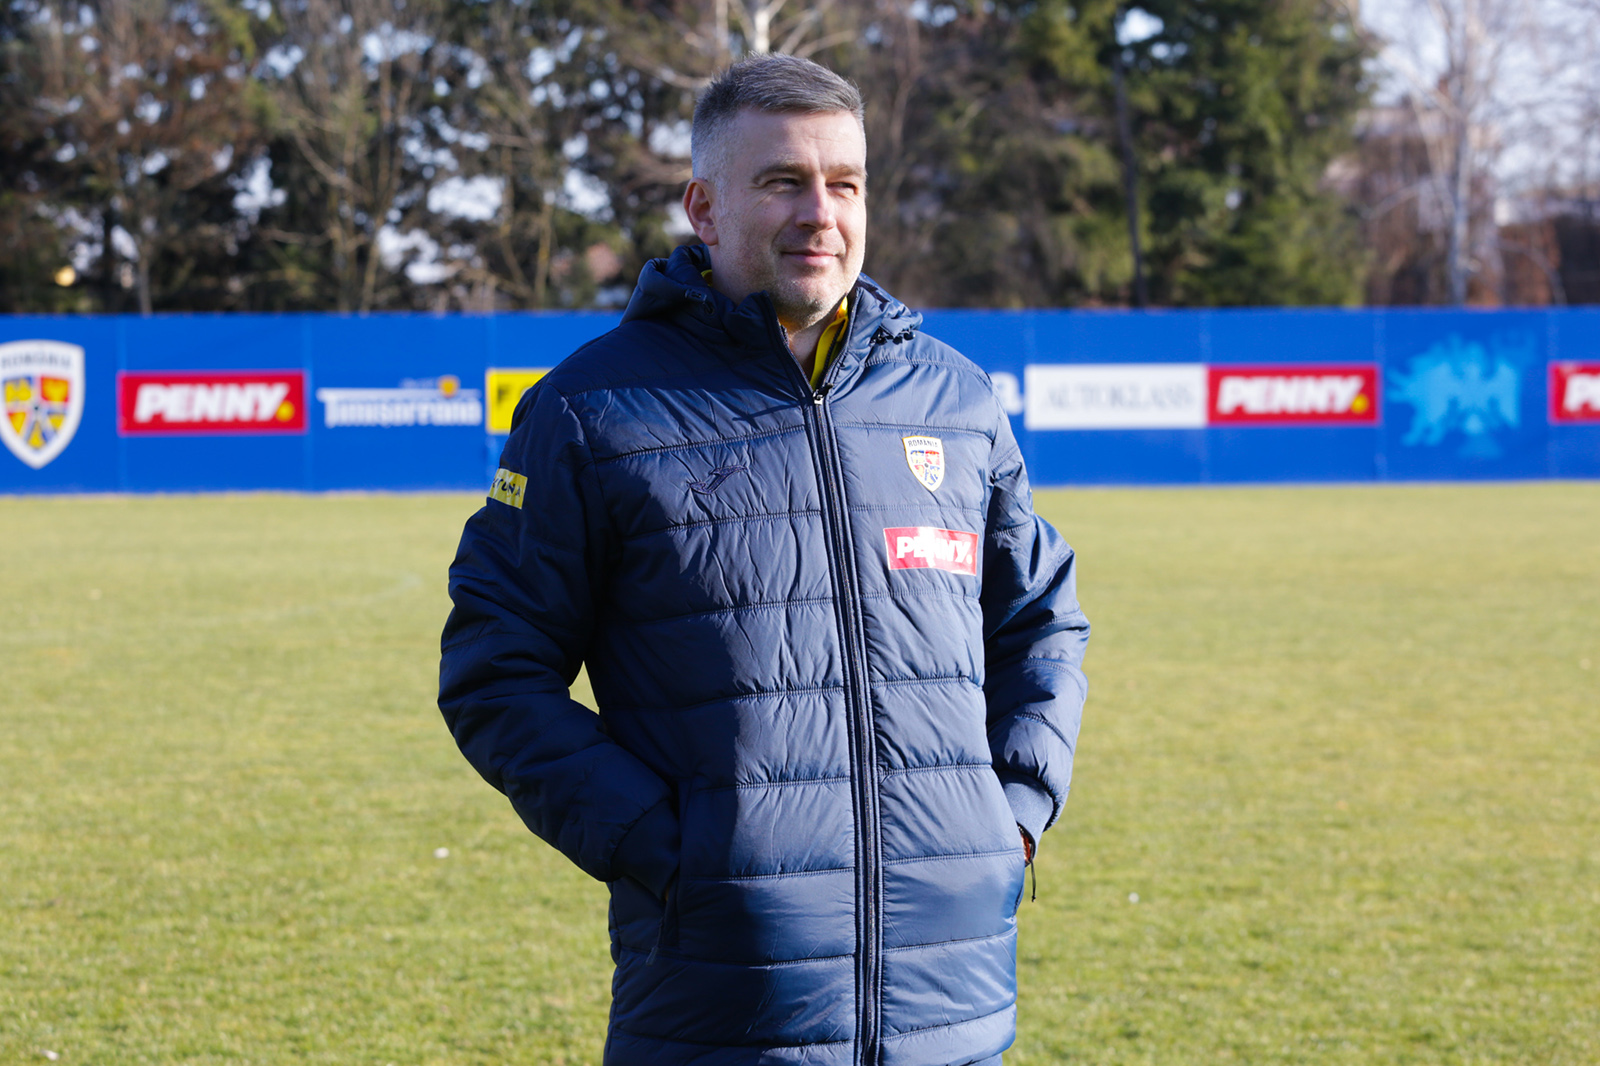 Edi Iordănescu își justifică selecția de la echipa națională: "Perspectivele din finalul campaniei precedente sunt pozitive"(Video)